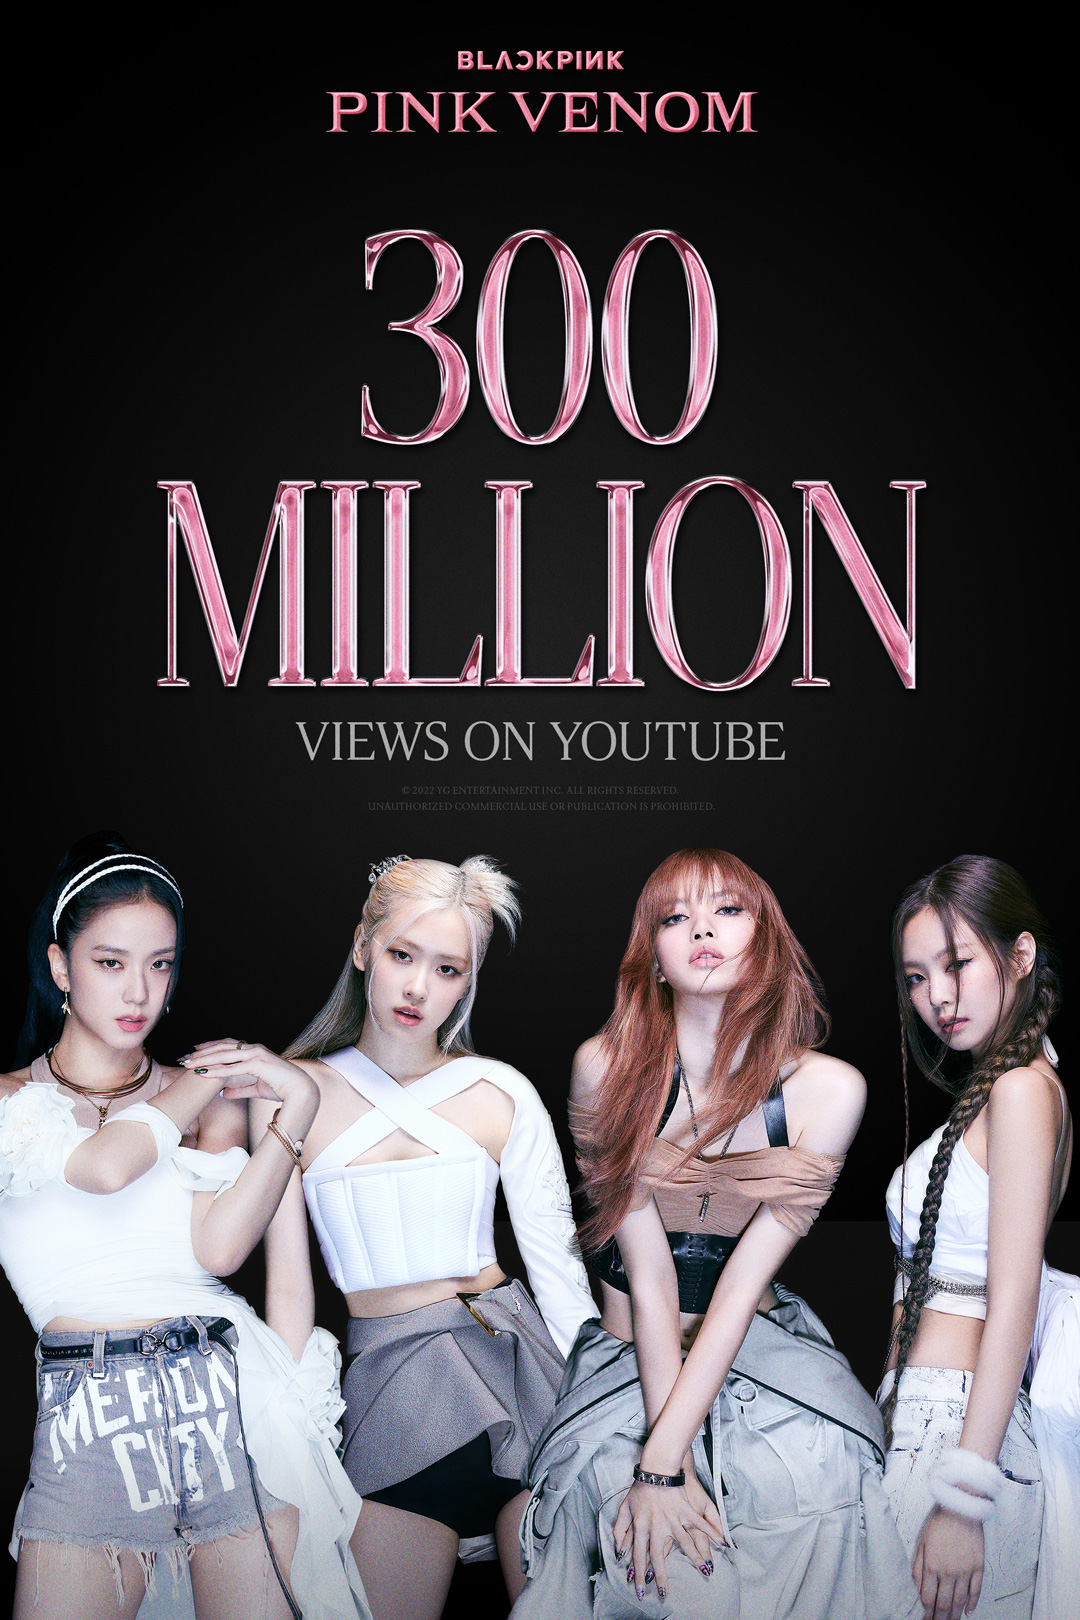 Poster chúc mừng MV “Pink Venom” đạt 300 triệu lượt xem trên Youtube. Ảnh: YG